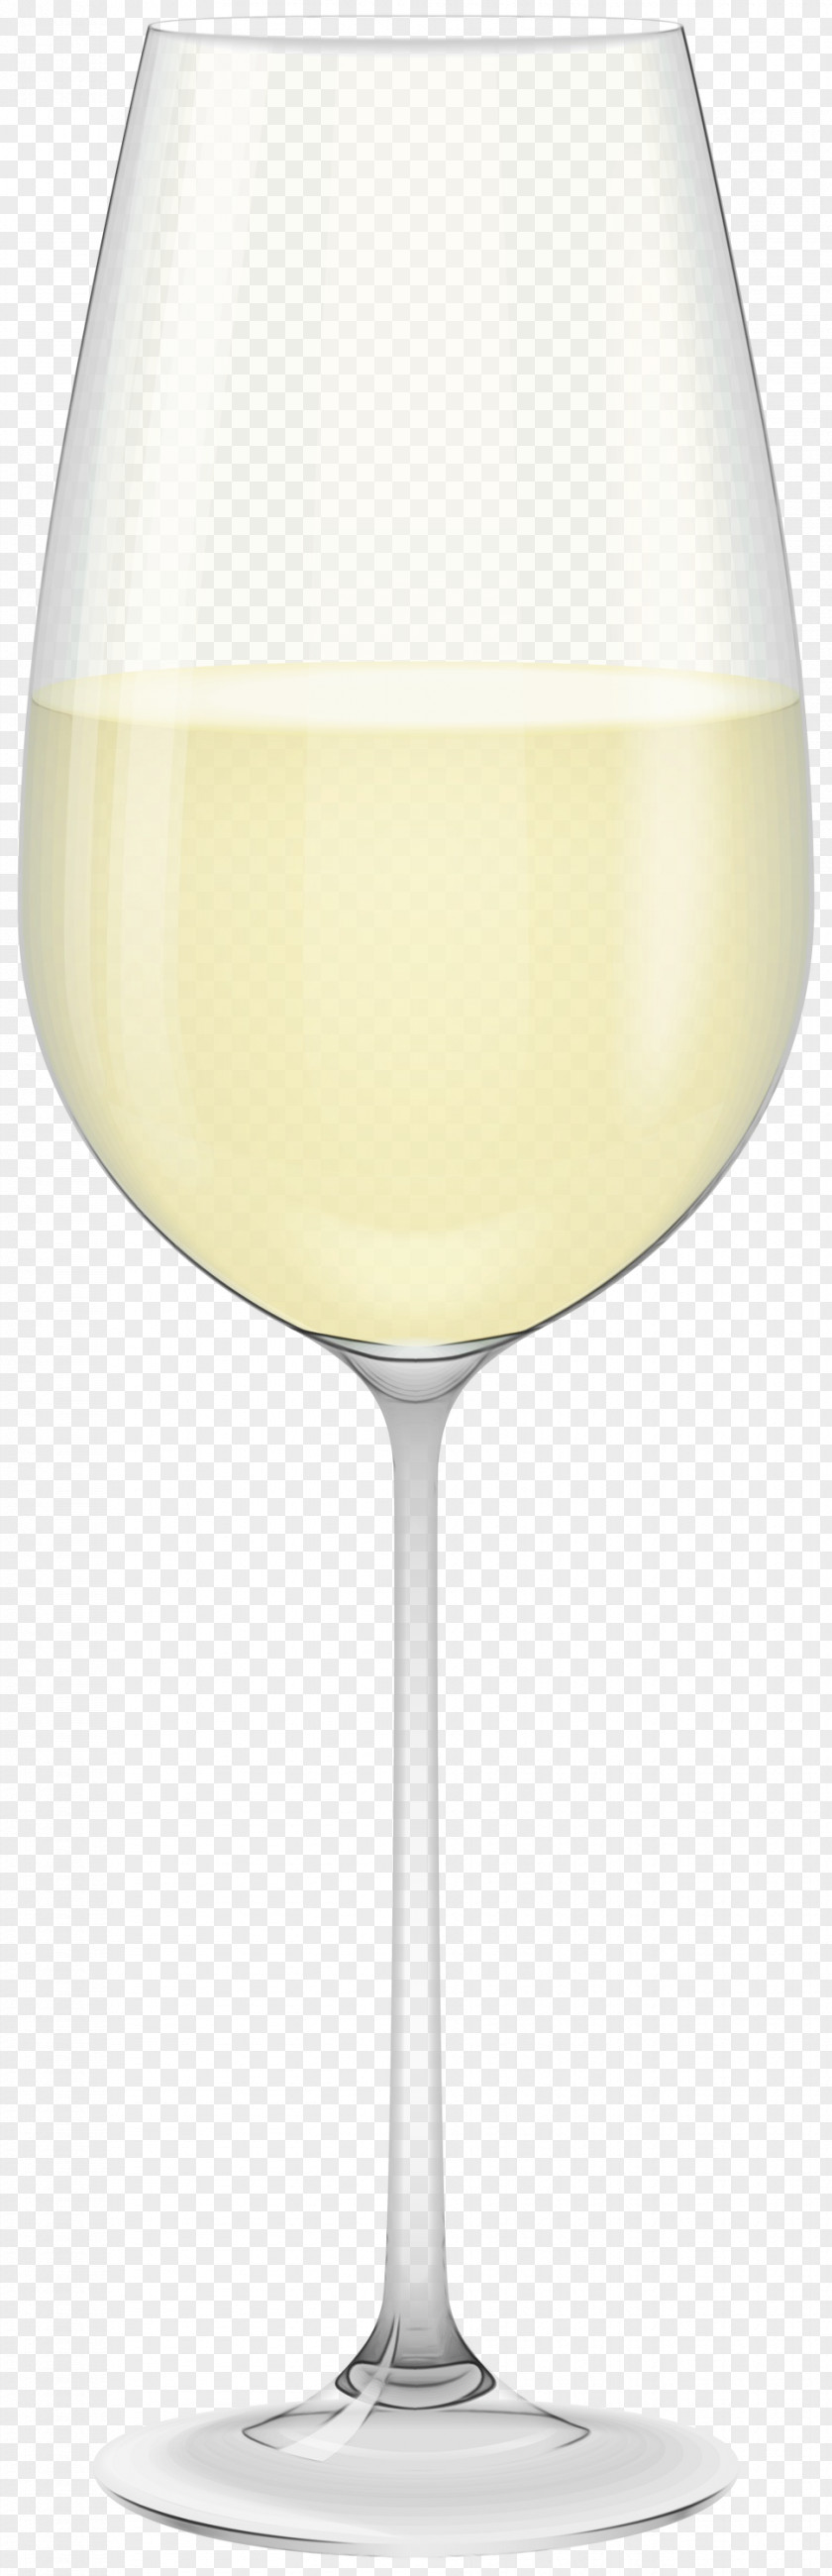 Alexander Distilled Beverage Champagne Glasses Background PNG